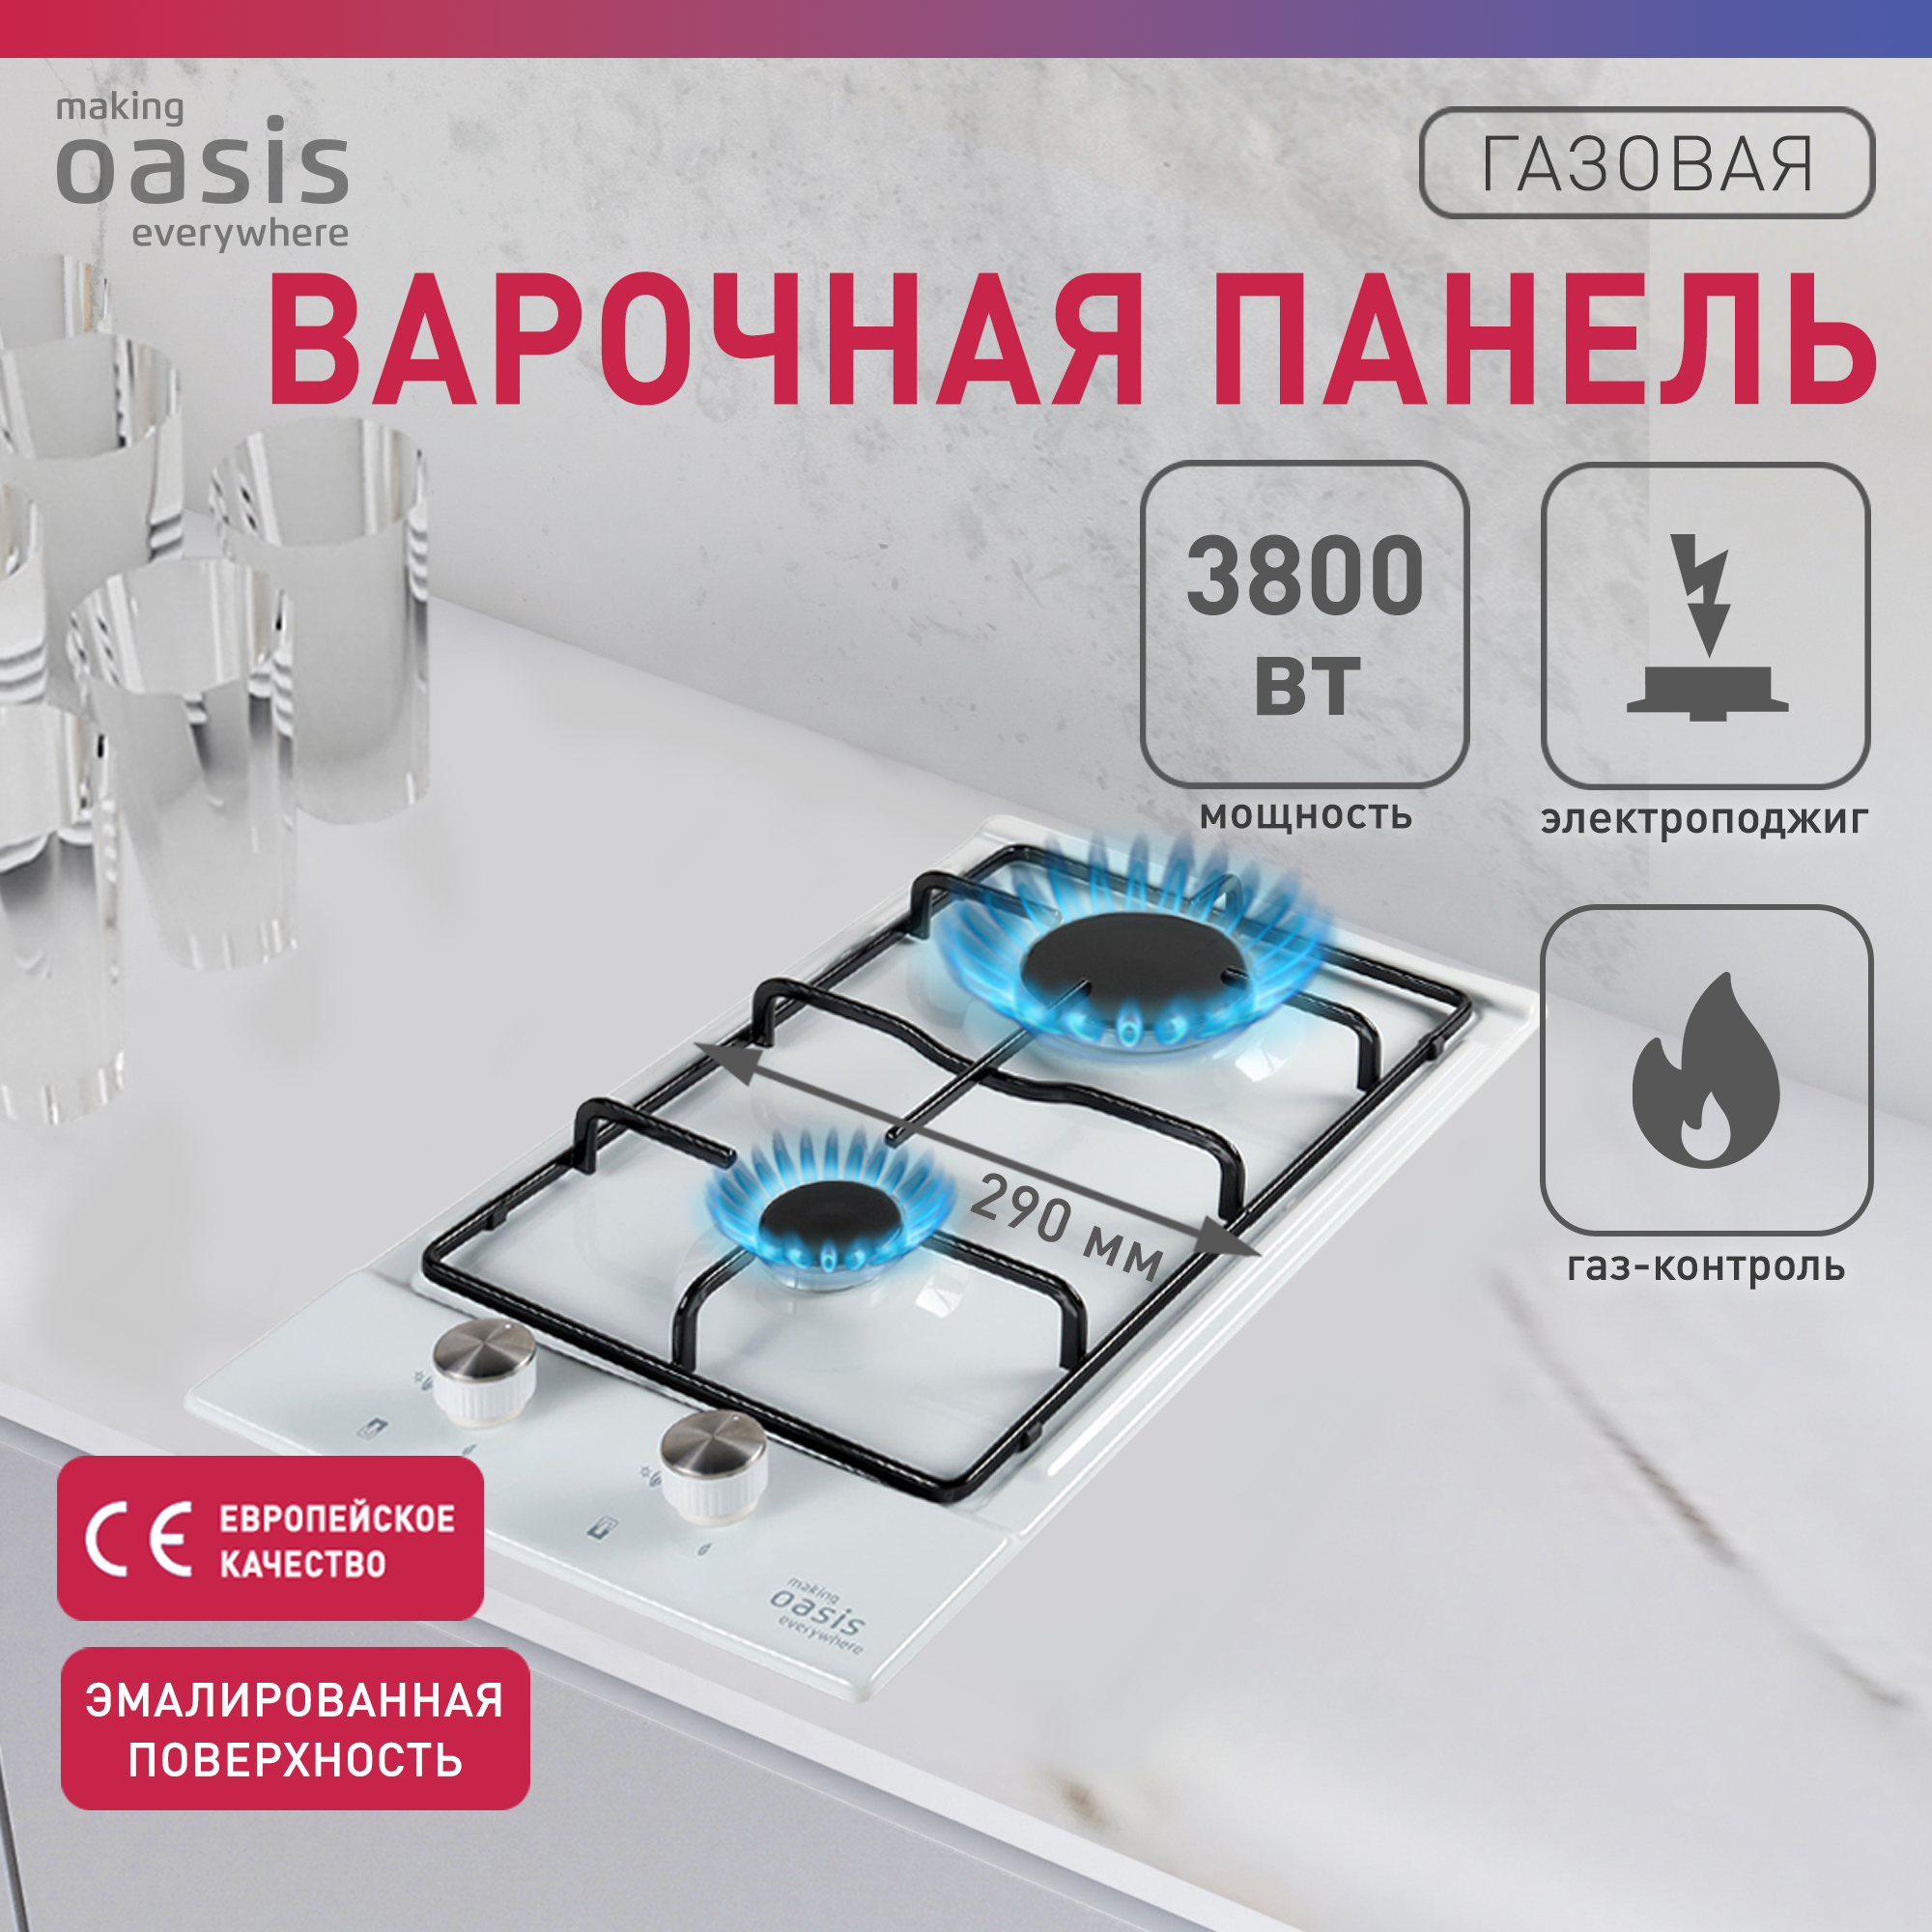 Встраиваемая варочная панель газовая making oasis everywhere P-MEWGD белый, купить в Москве, цены в интернет-магазинах на Мегамаркет